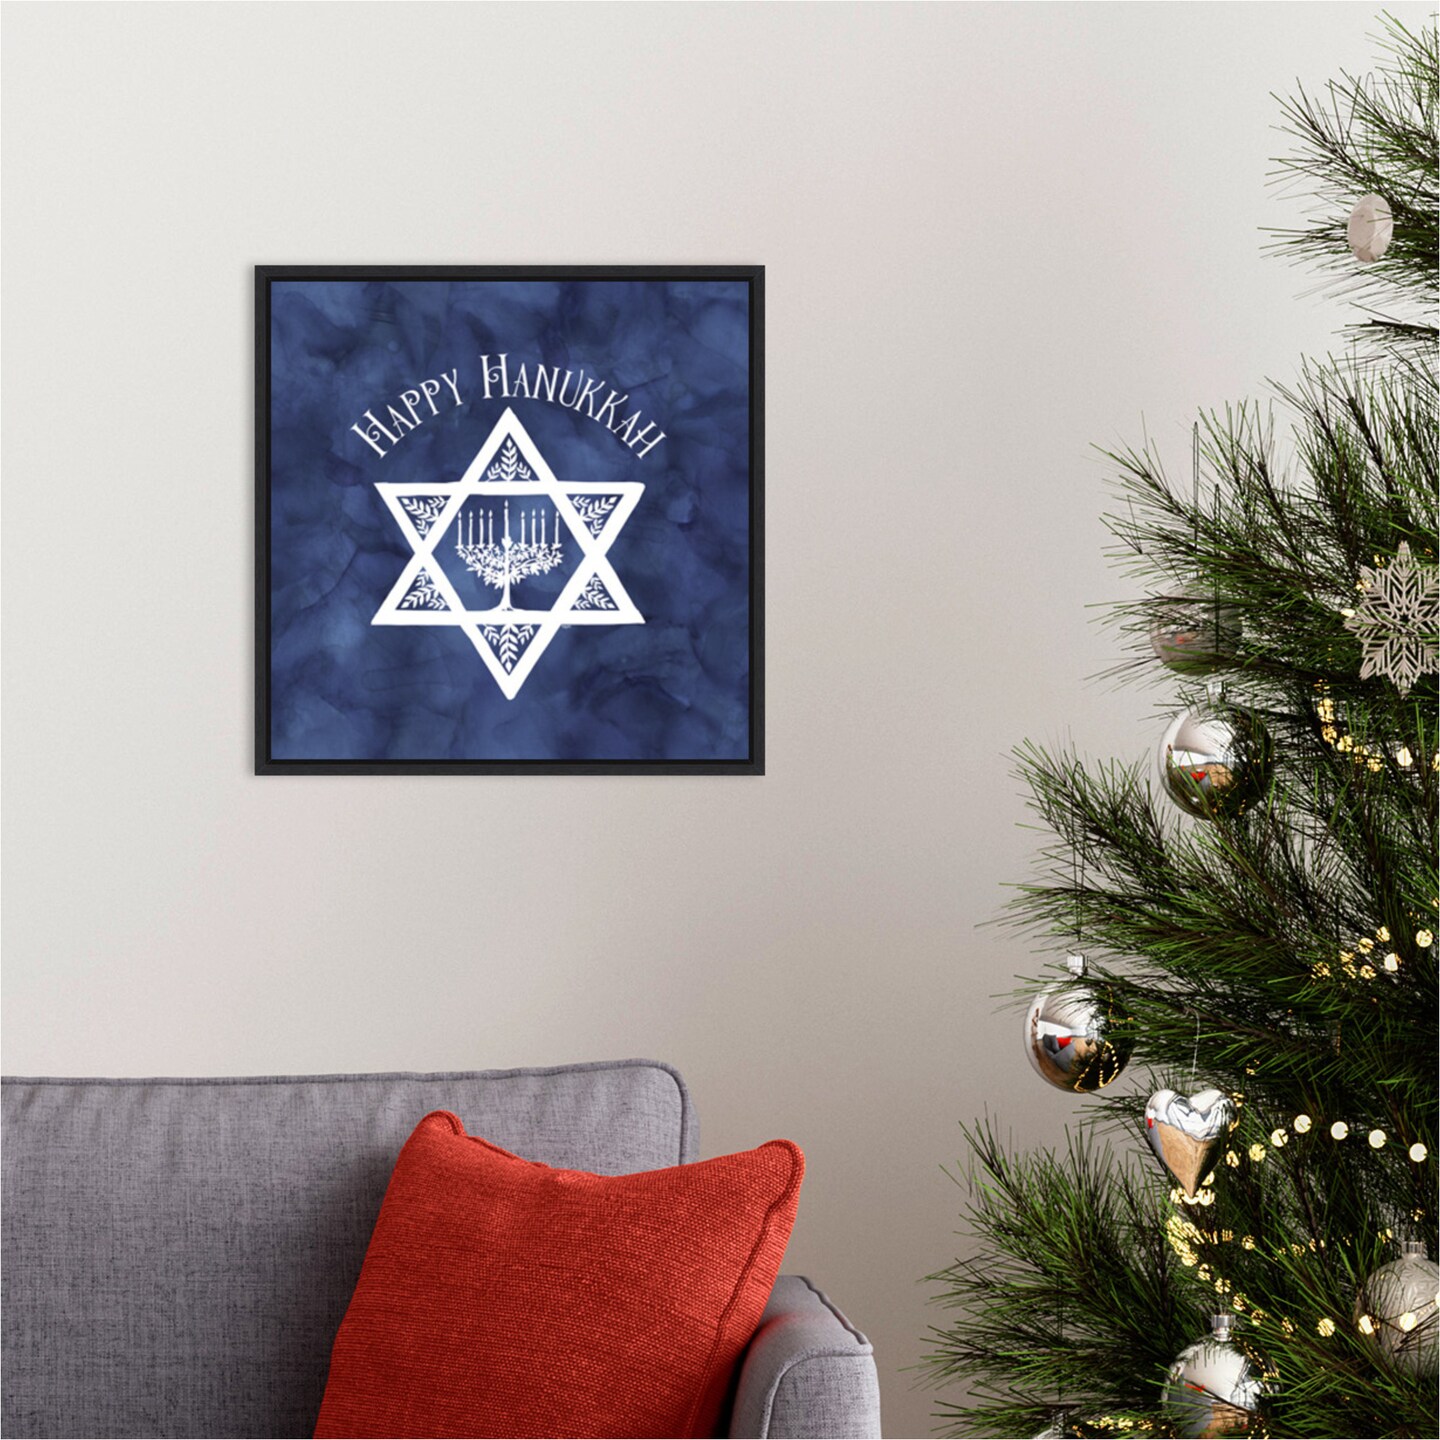 Festival of Lights blue III-Happy Hanukkah by Tara Reed 16-in. W x 16-in. H. Canvas Wall Art Print Framed in Black